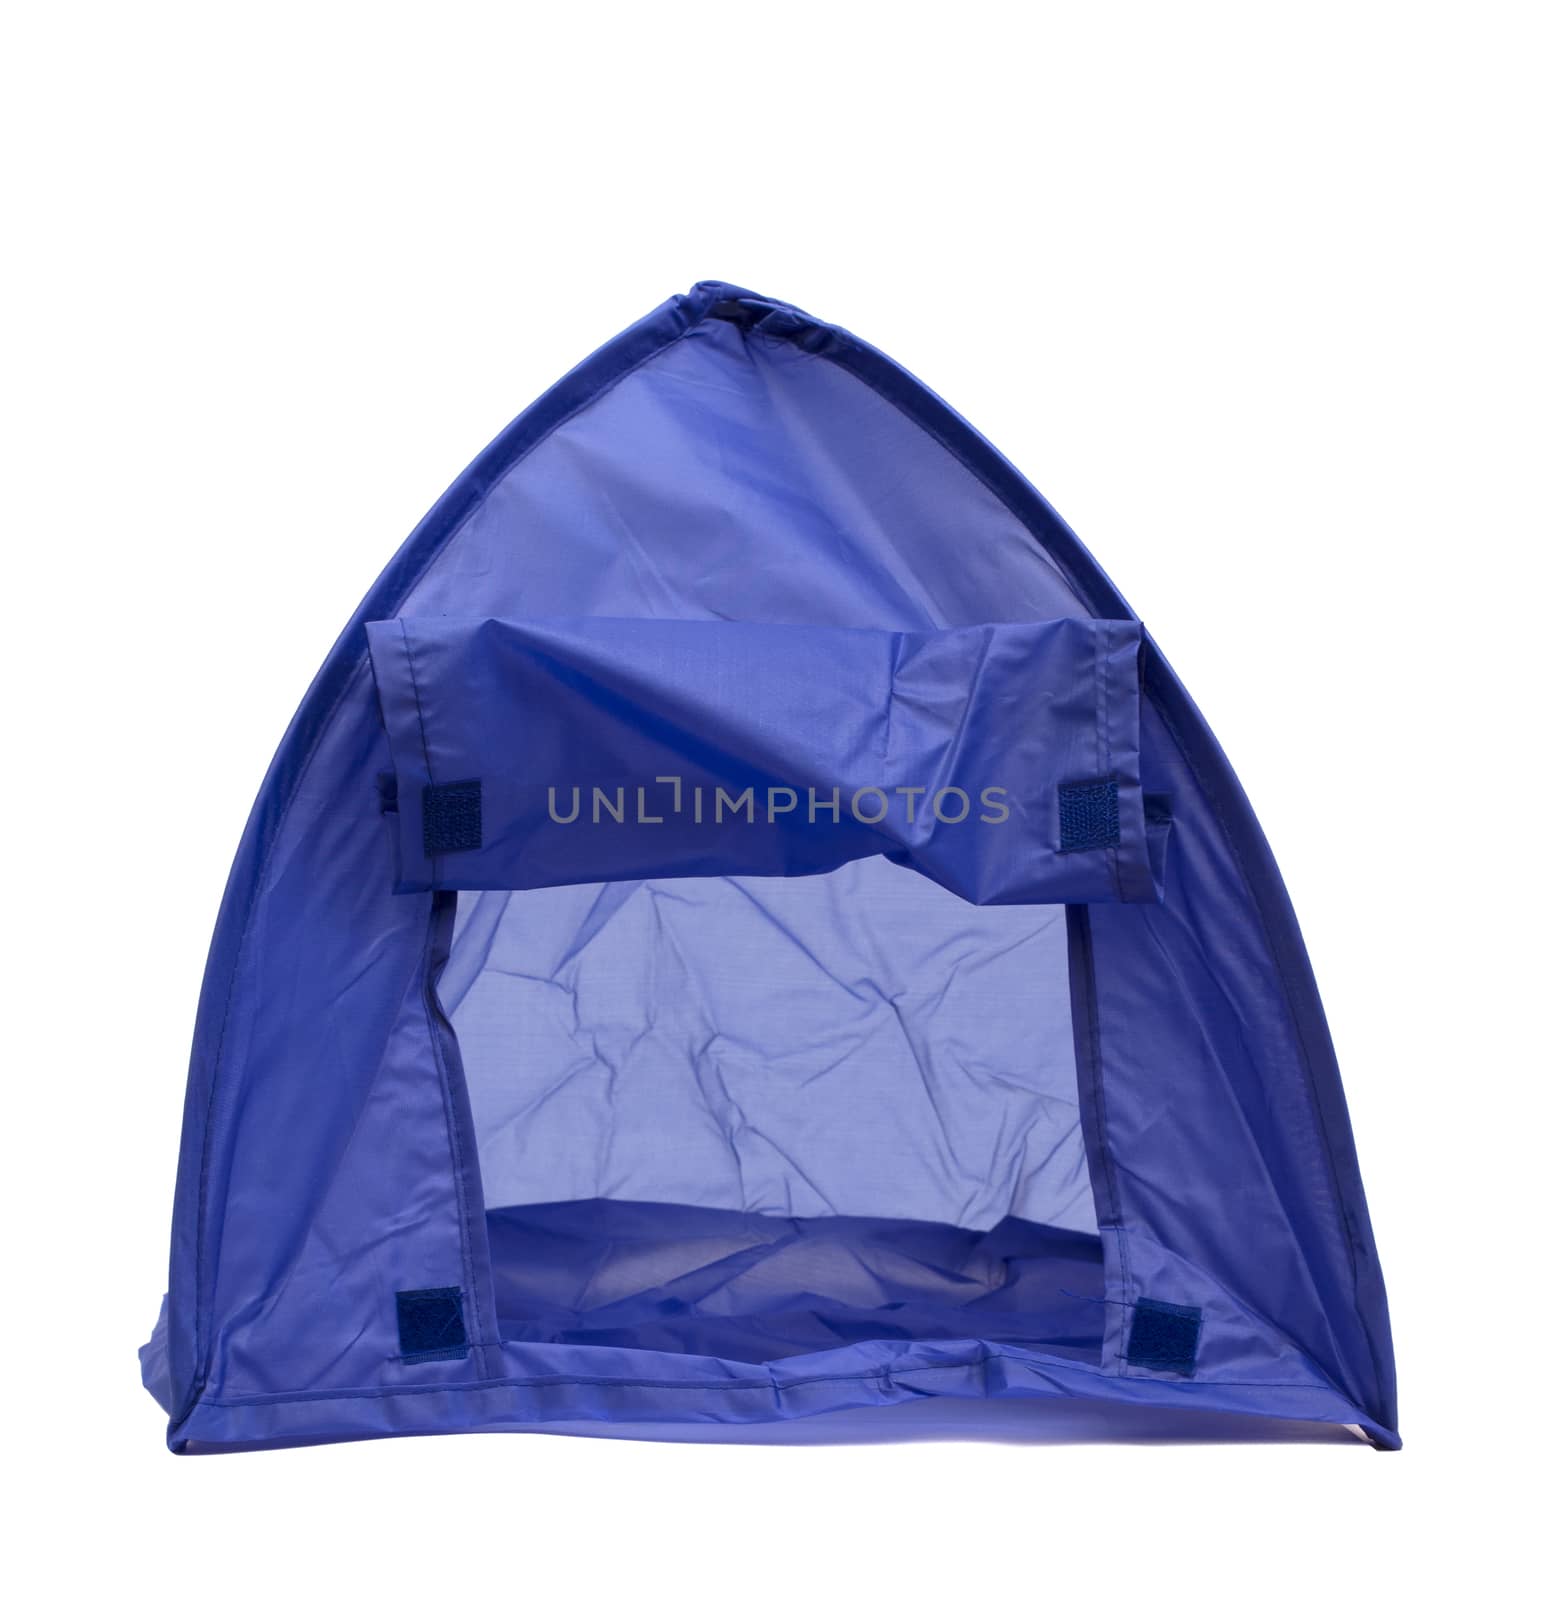 blue tent by gdvcom